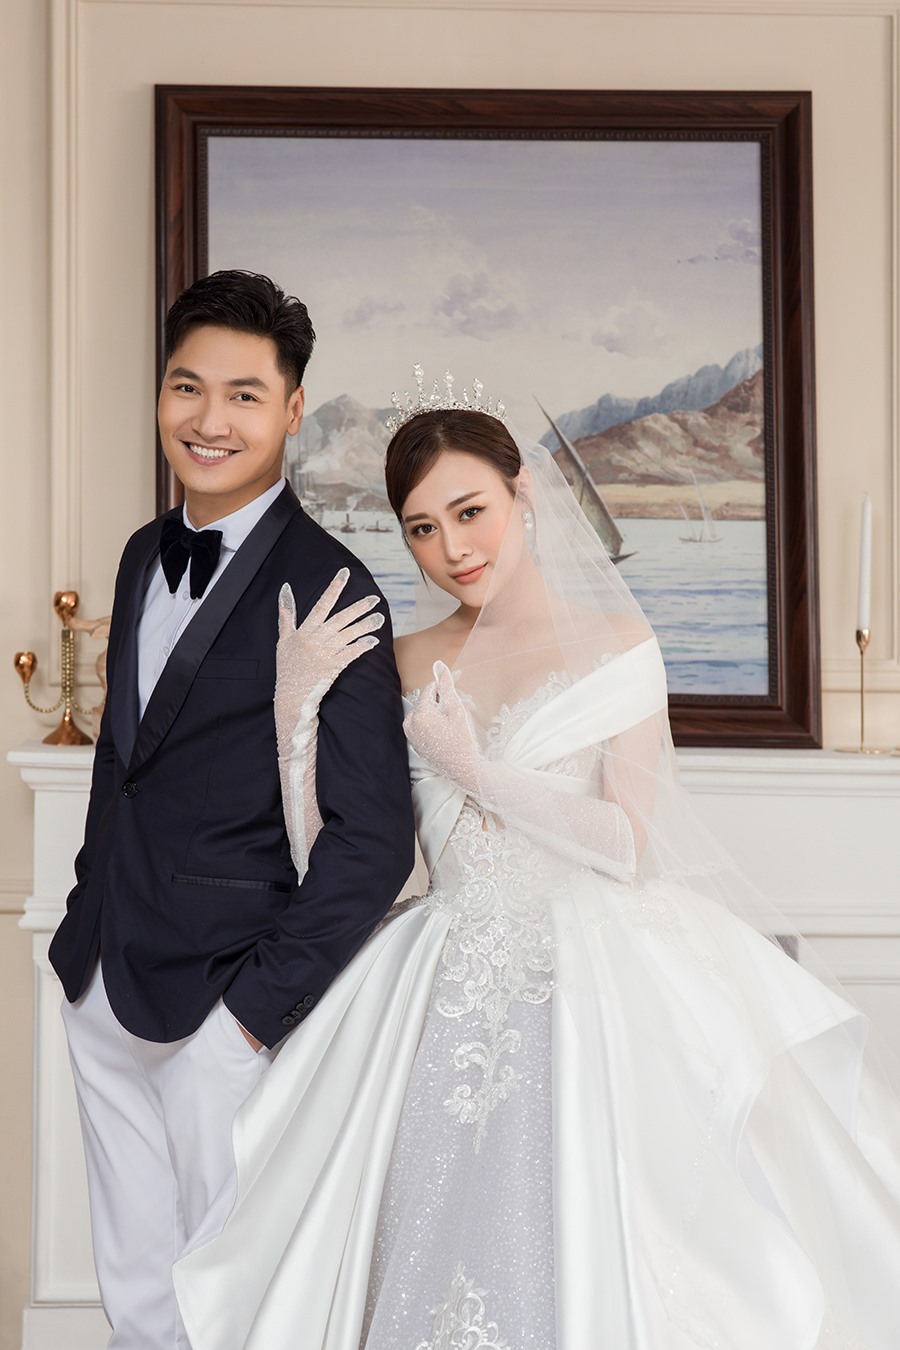 Cách đây vài tháng, Phương Oanh và Mạnh Trường đã thực hiện bộ ảnh này để làm đạo cụ cho đám cưới của Nam và Long.